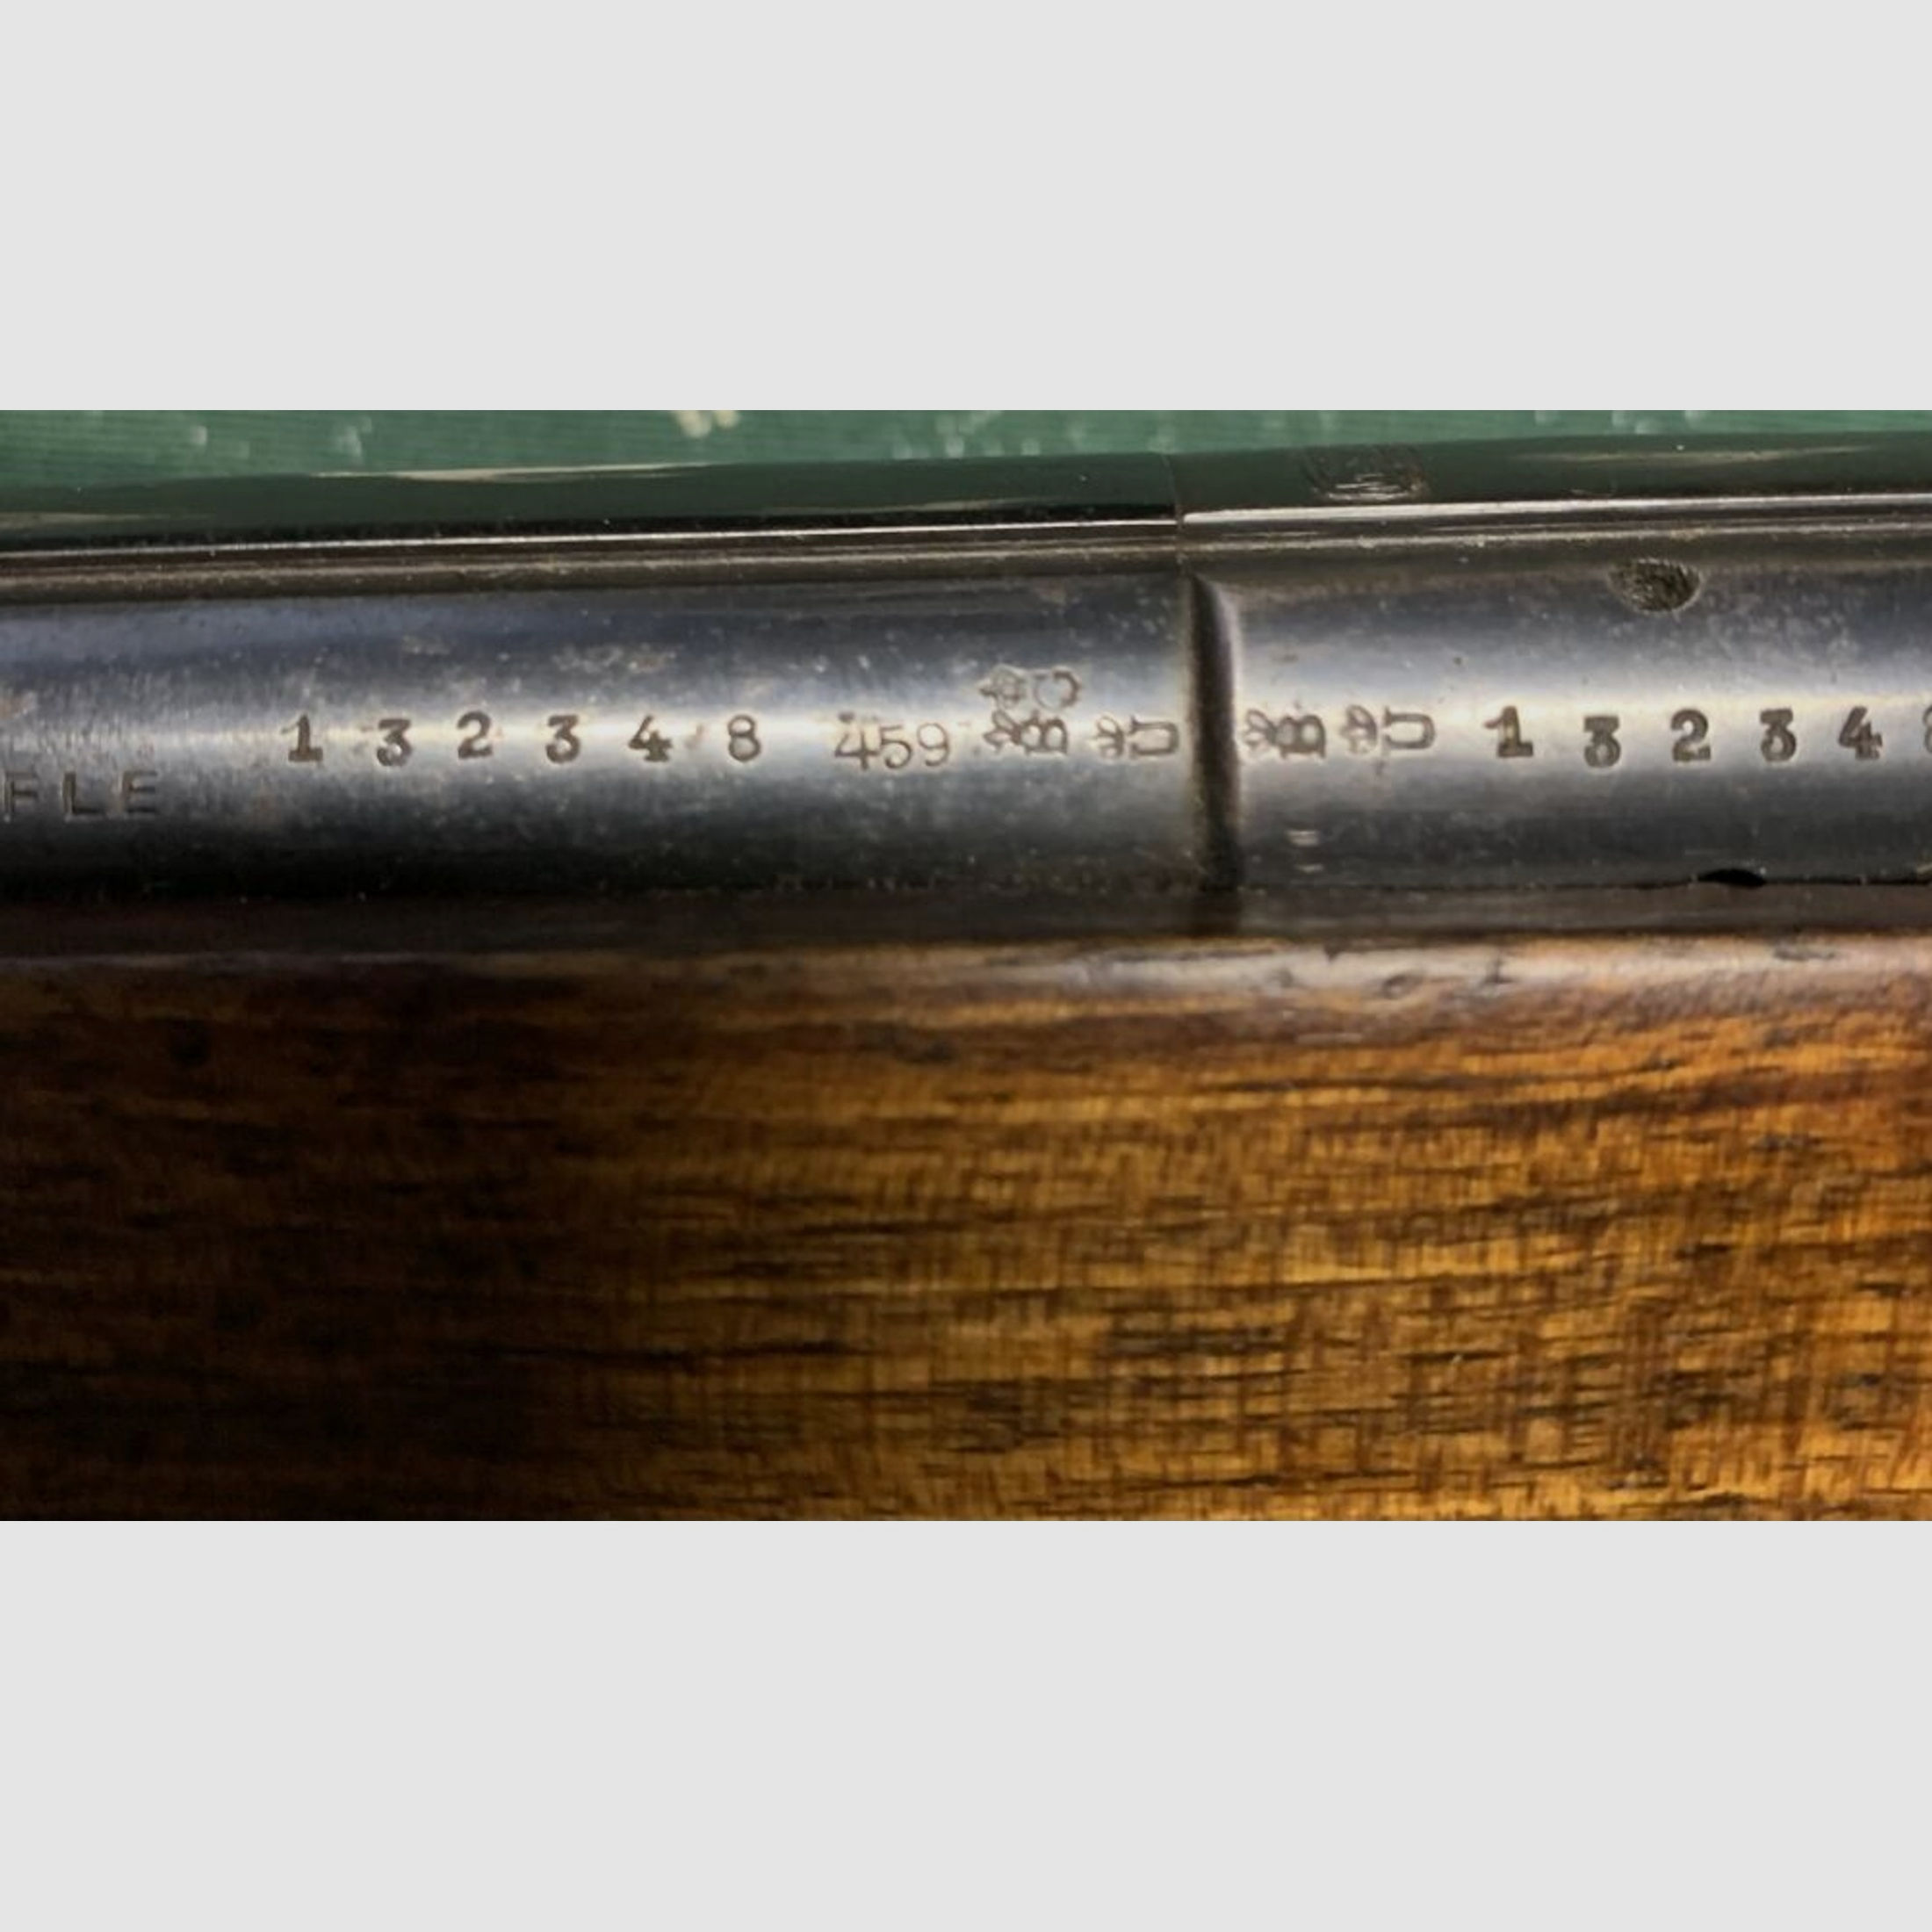 Mauser	 D.R.P.D.R.G.M - .22LR